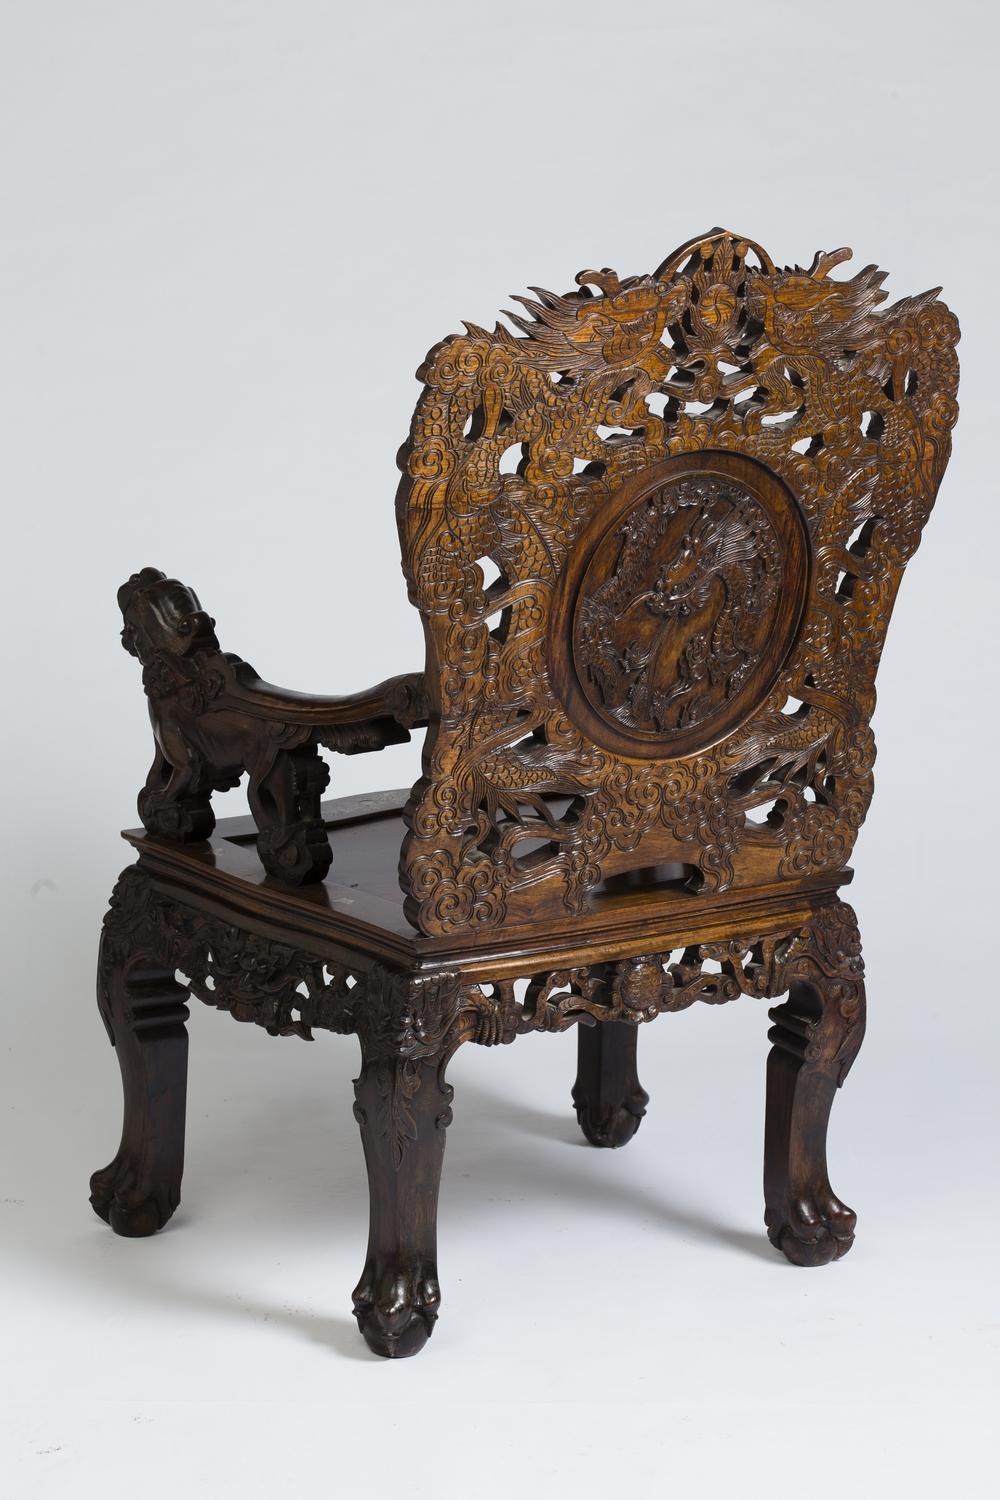 Paire de fauteuils indochinois, vers 1880-1900, en bois de fer finement sculpté et ajouré, incrusté d'un riche décor de marqueterie de nacre.
Les deux fauteuils sont identiques mais chaque médaillon en nacre a un décor différent.